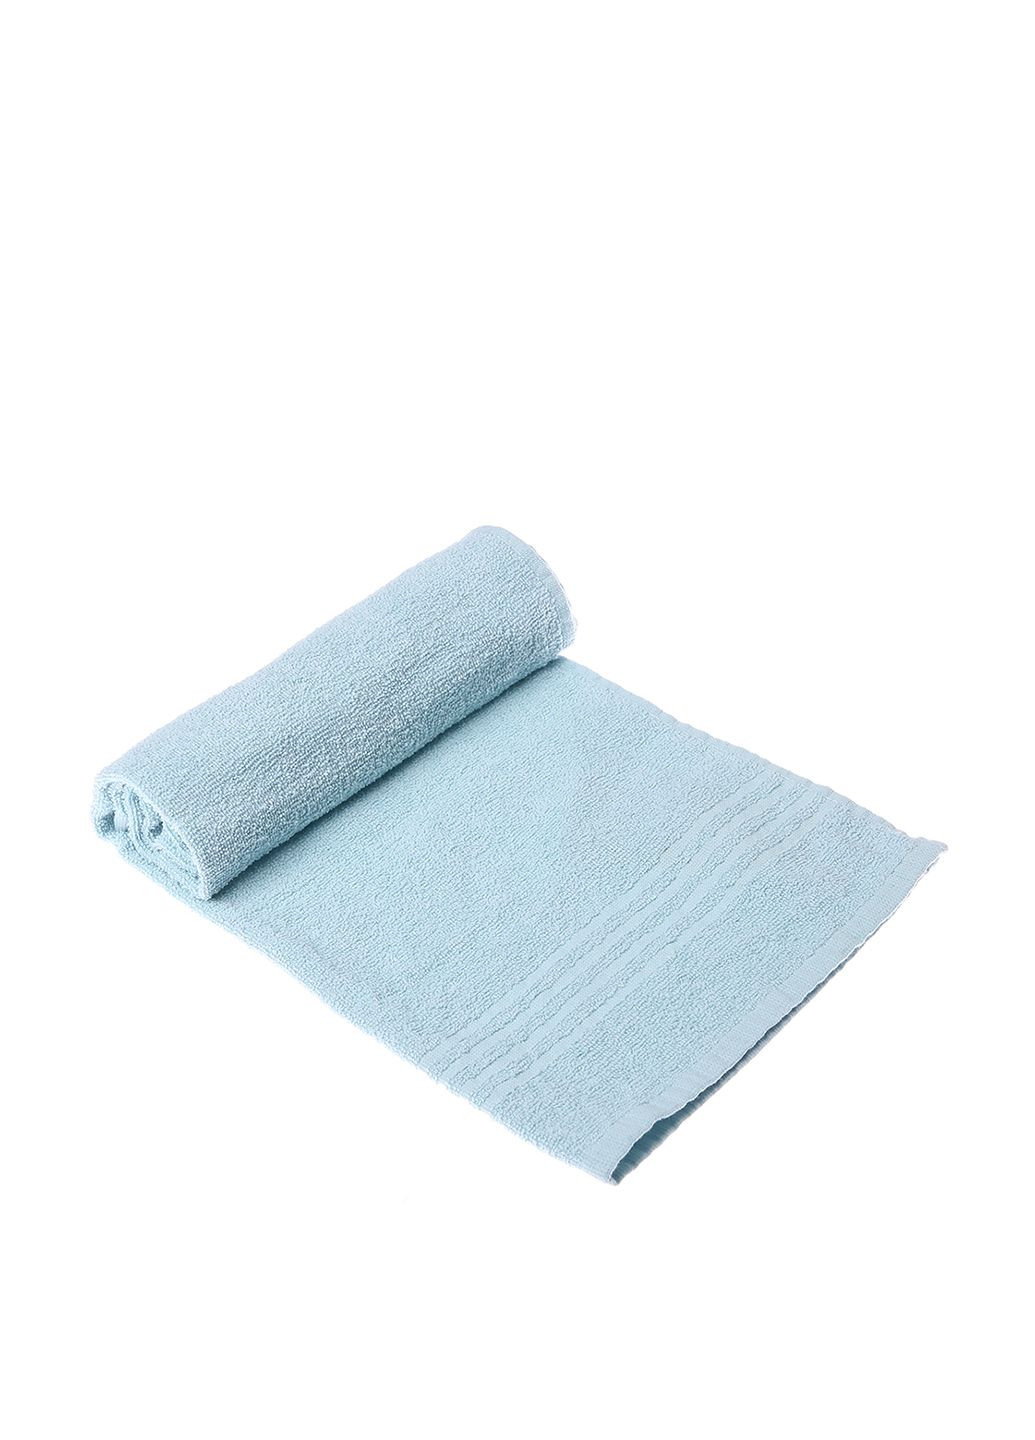 Miomare полотенце, 50х90 см однотонный голубой производство - Германия